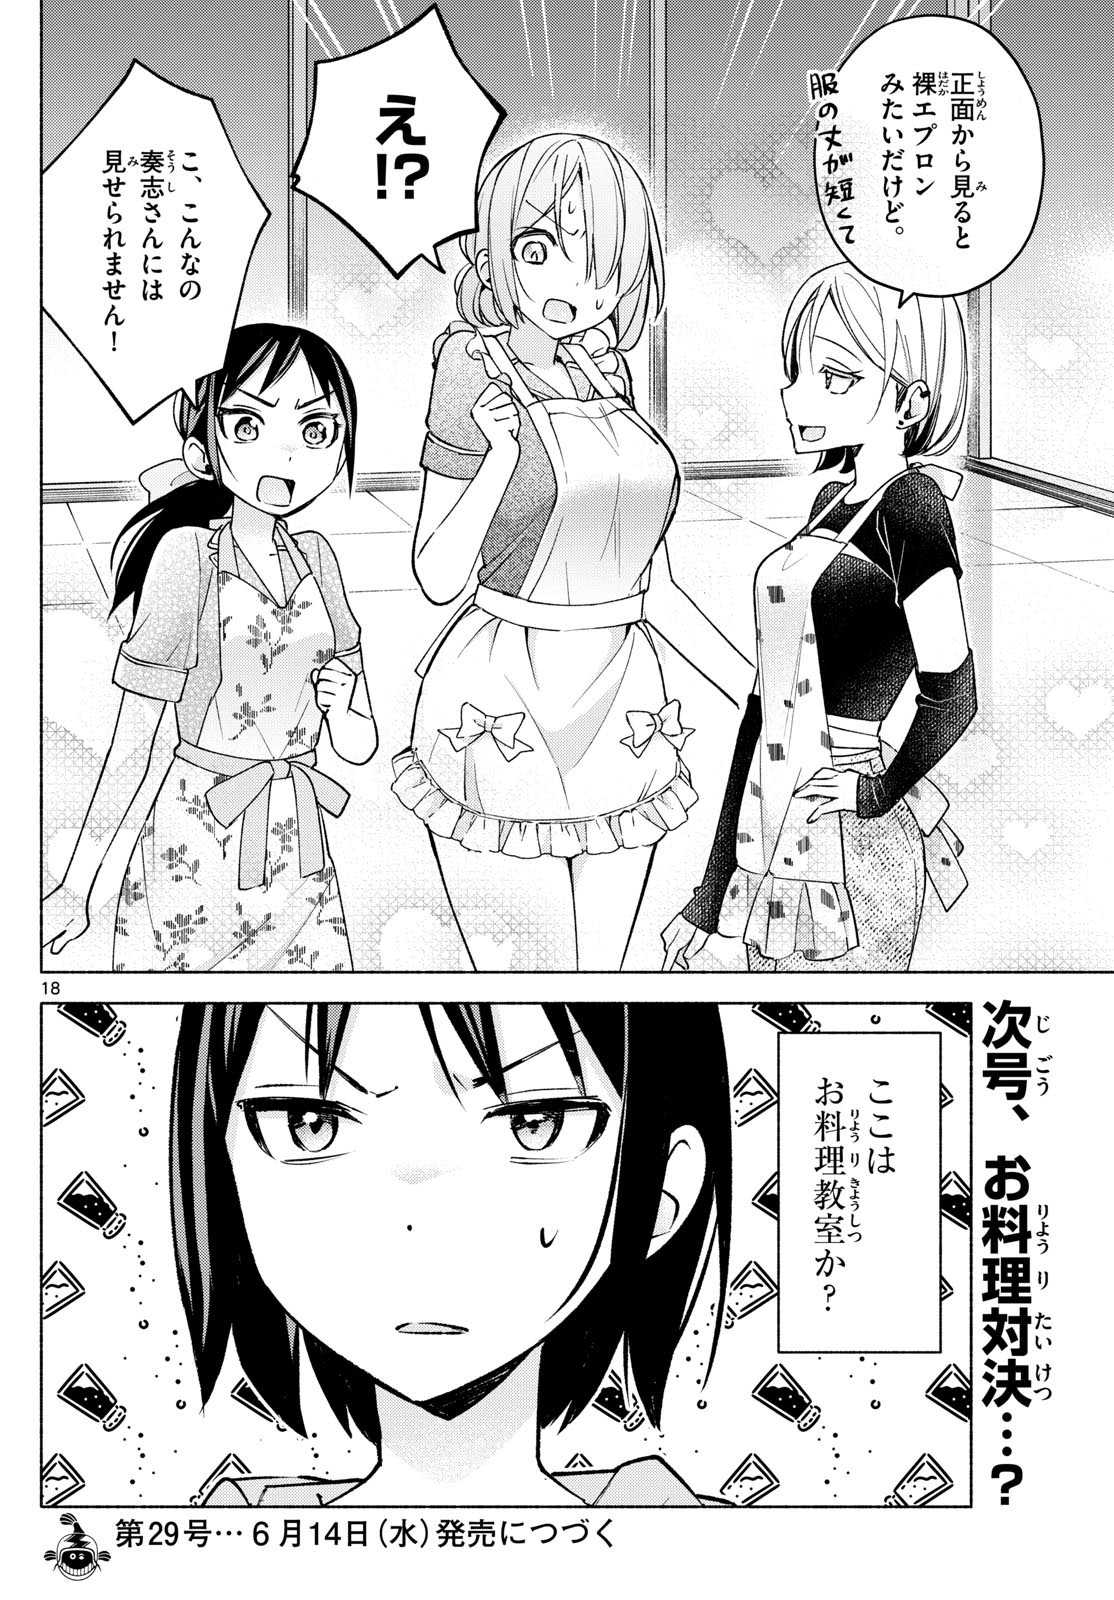 Kimi to Warui Koto ga Shitai - Chapter 031 - Page 18